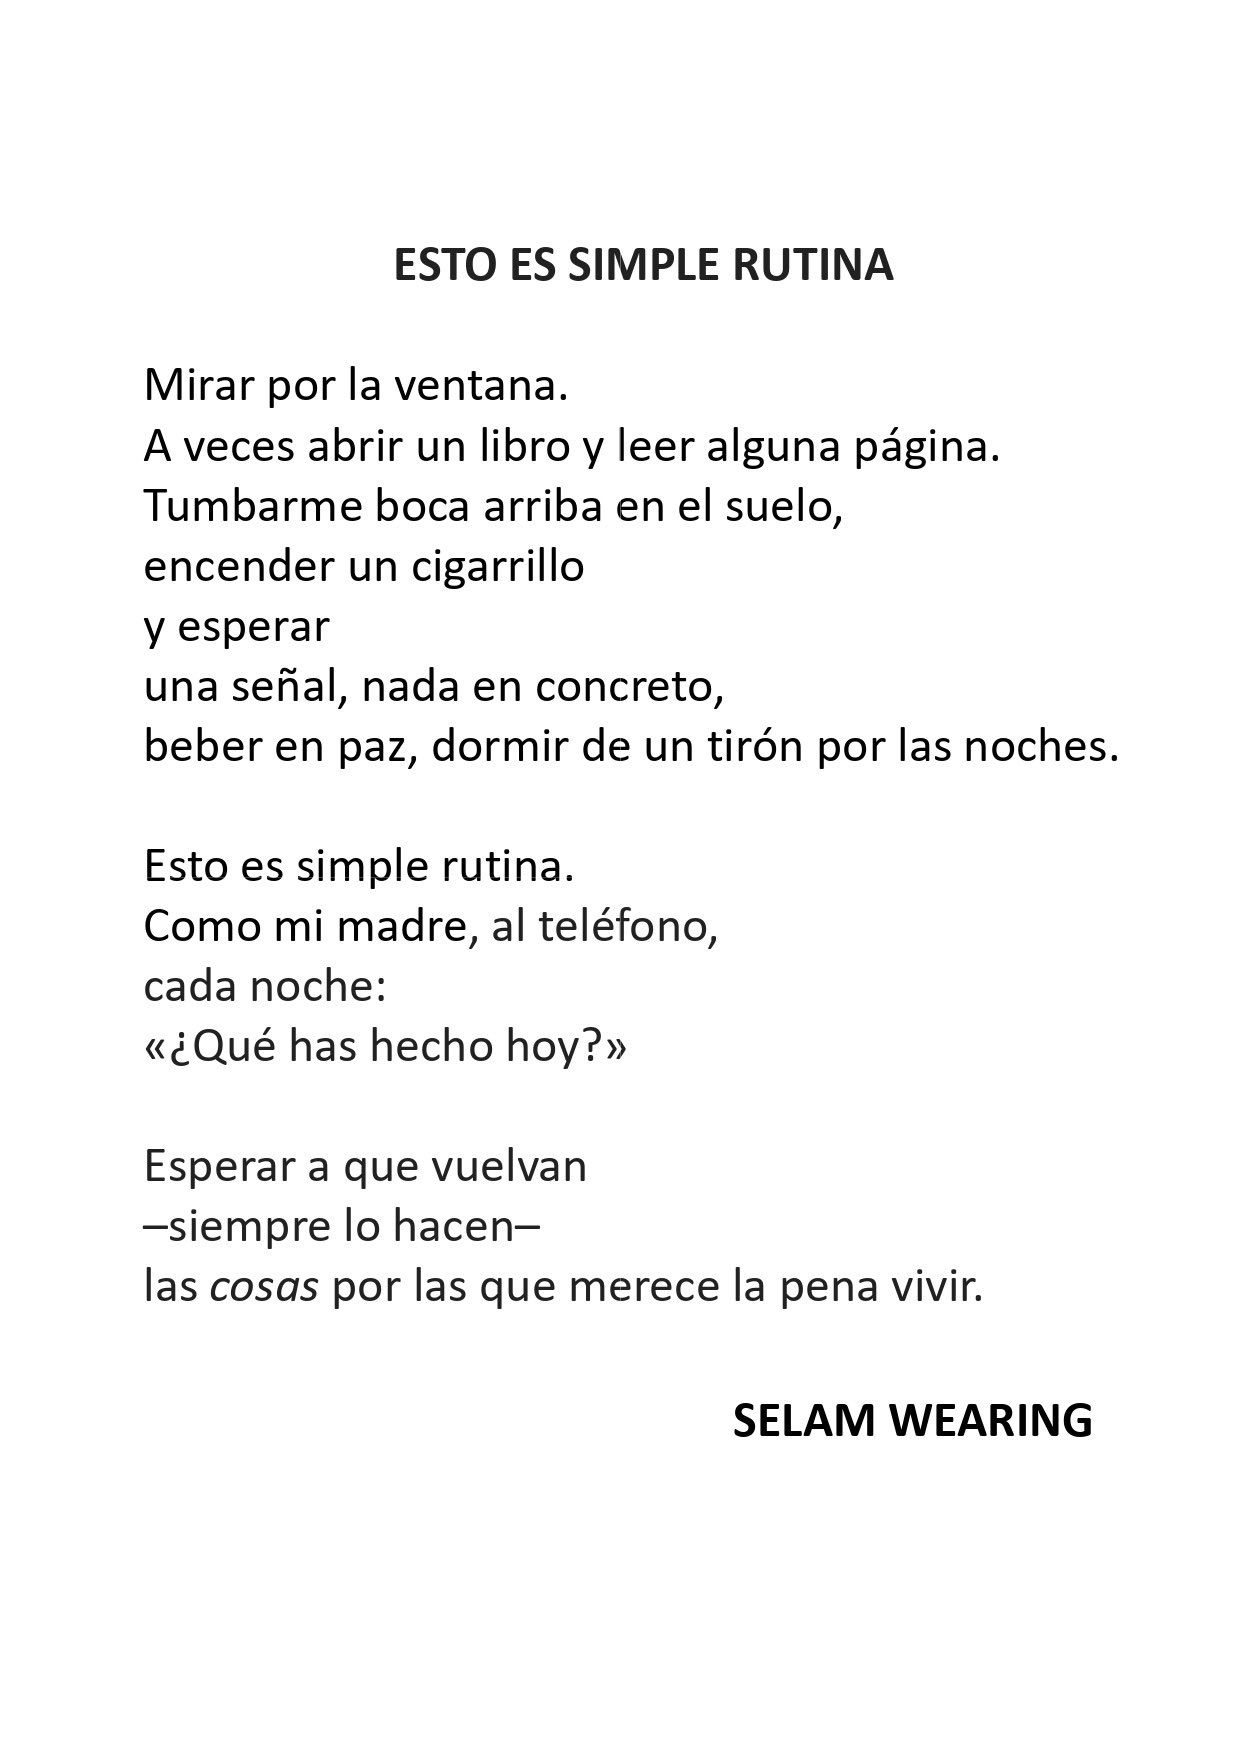 Humanista Acción de gracias cáncer Selam Wearing on Twitter: "Esto es simple rutina. 👇🏼 #poesía #poema  https://t.co/LrChUrv7WL" / Twitter